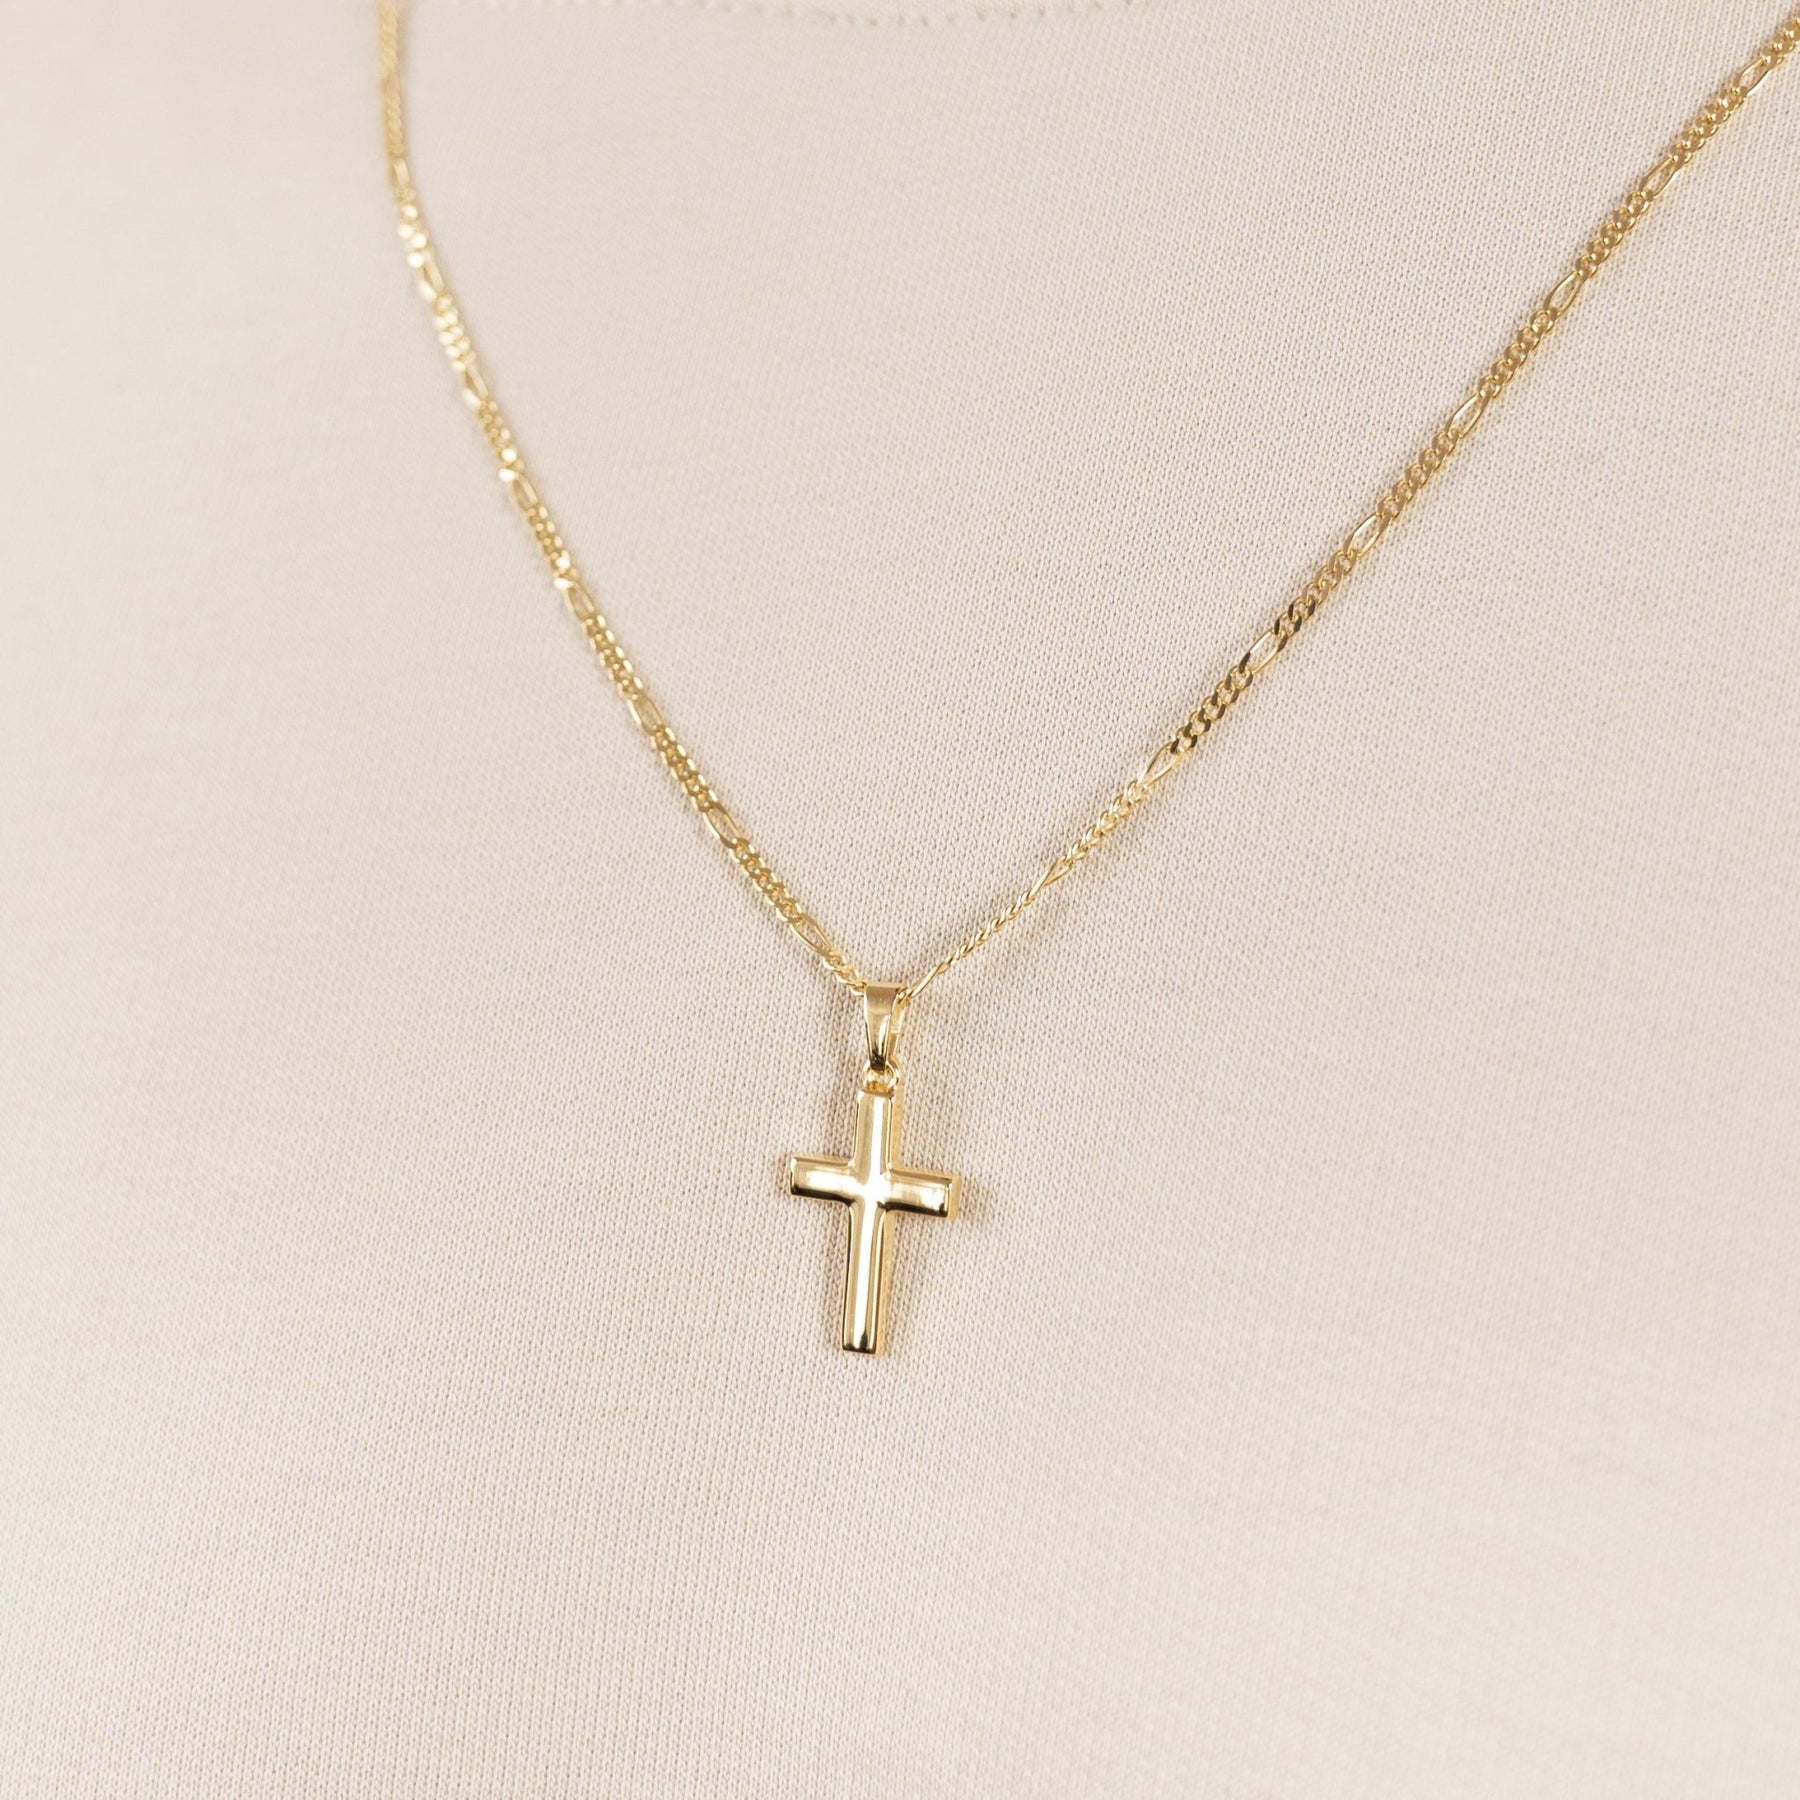 IDENTIM® Herren Kreuz Anhänger Halskette Jesus Korpus Kruzifix 333 Gold